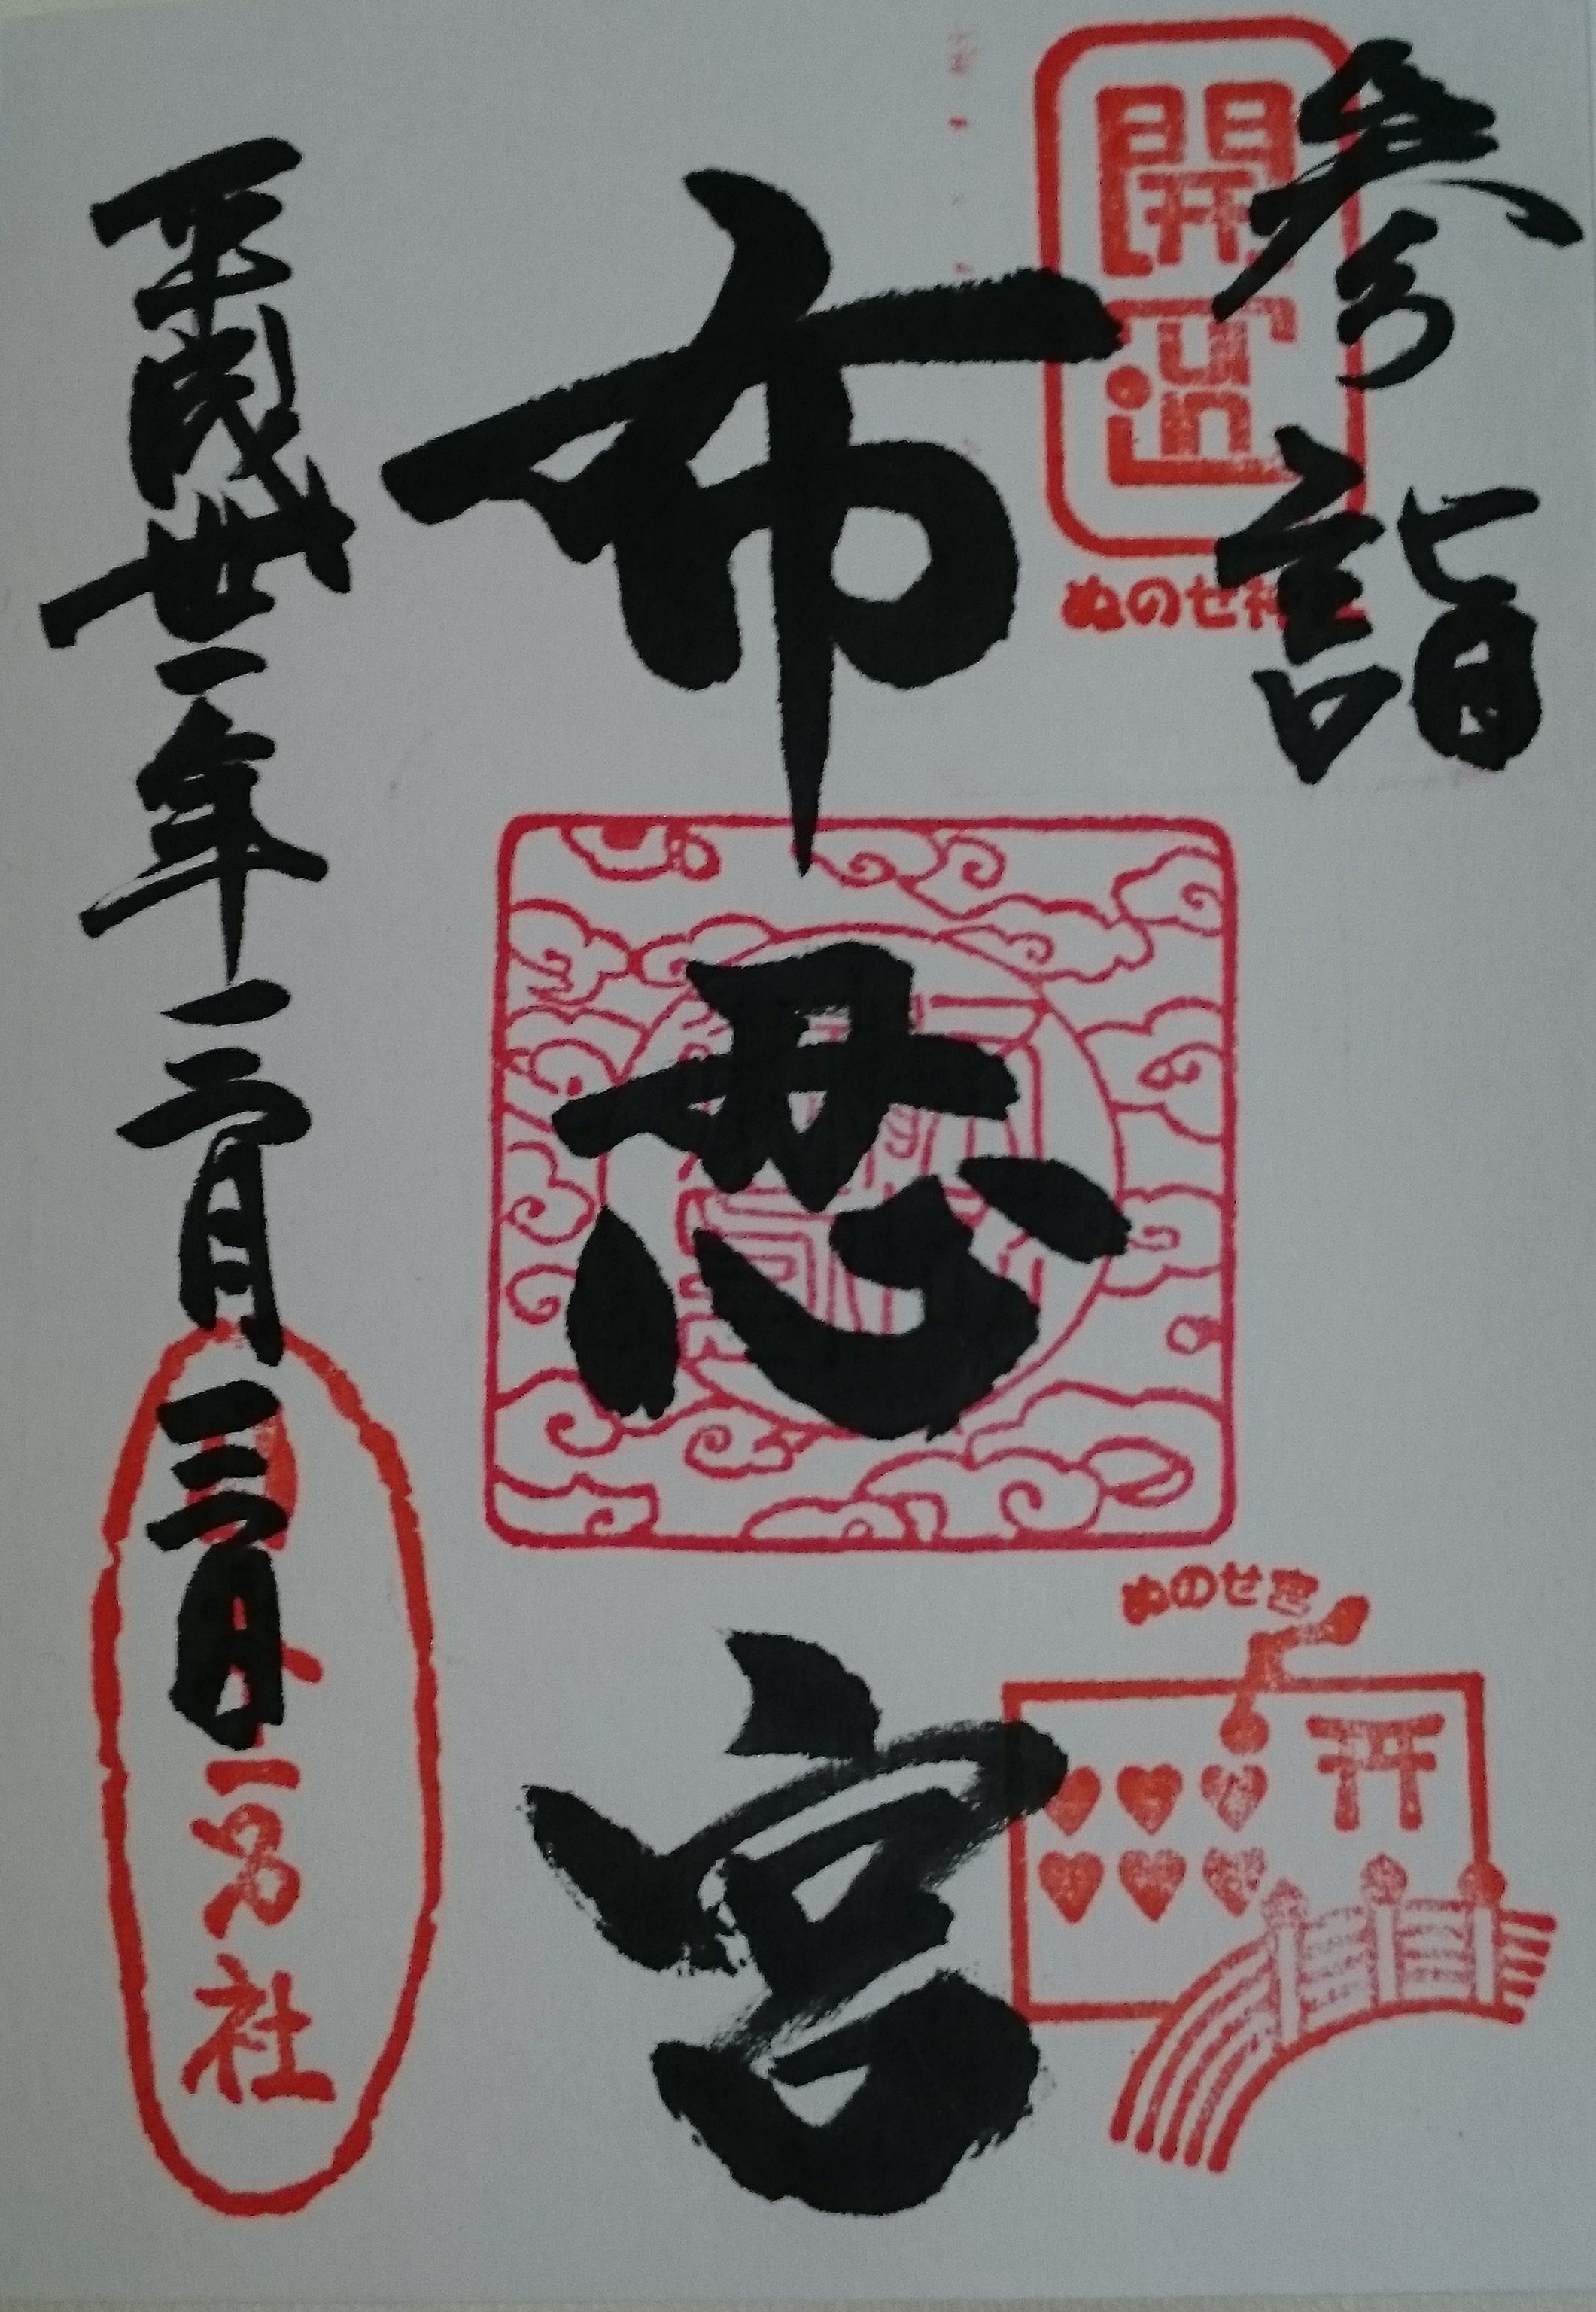 【大阪　布忍神社】笑える「恋みくじ」とハートの押し印がかわいい御朱印